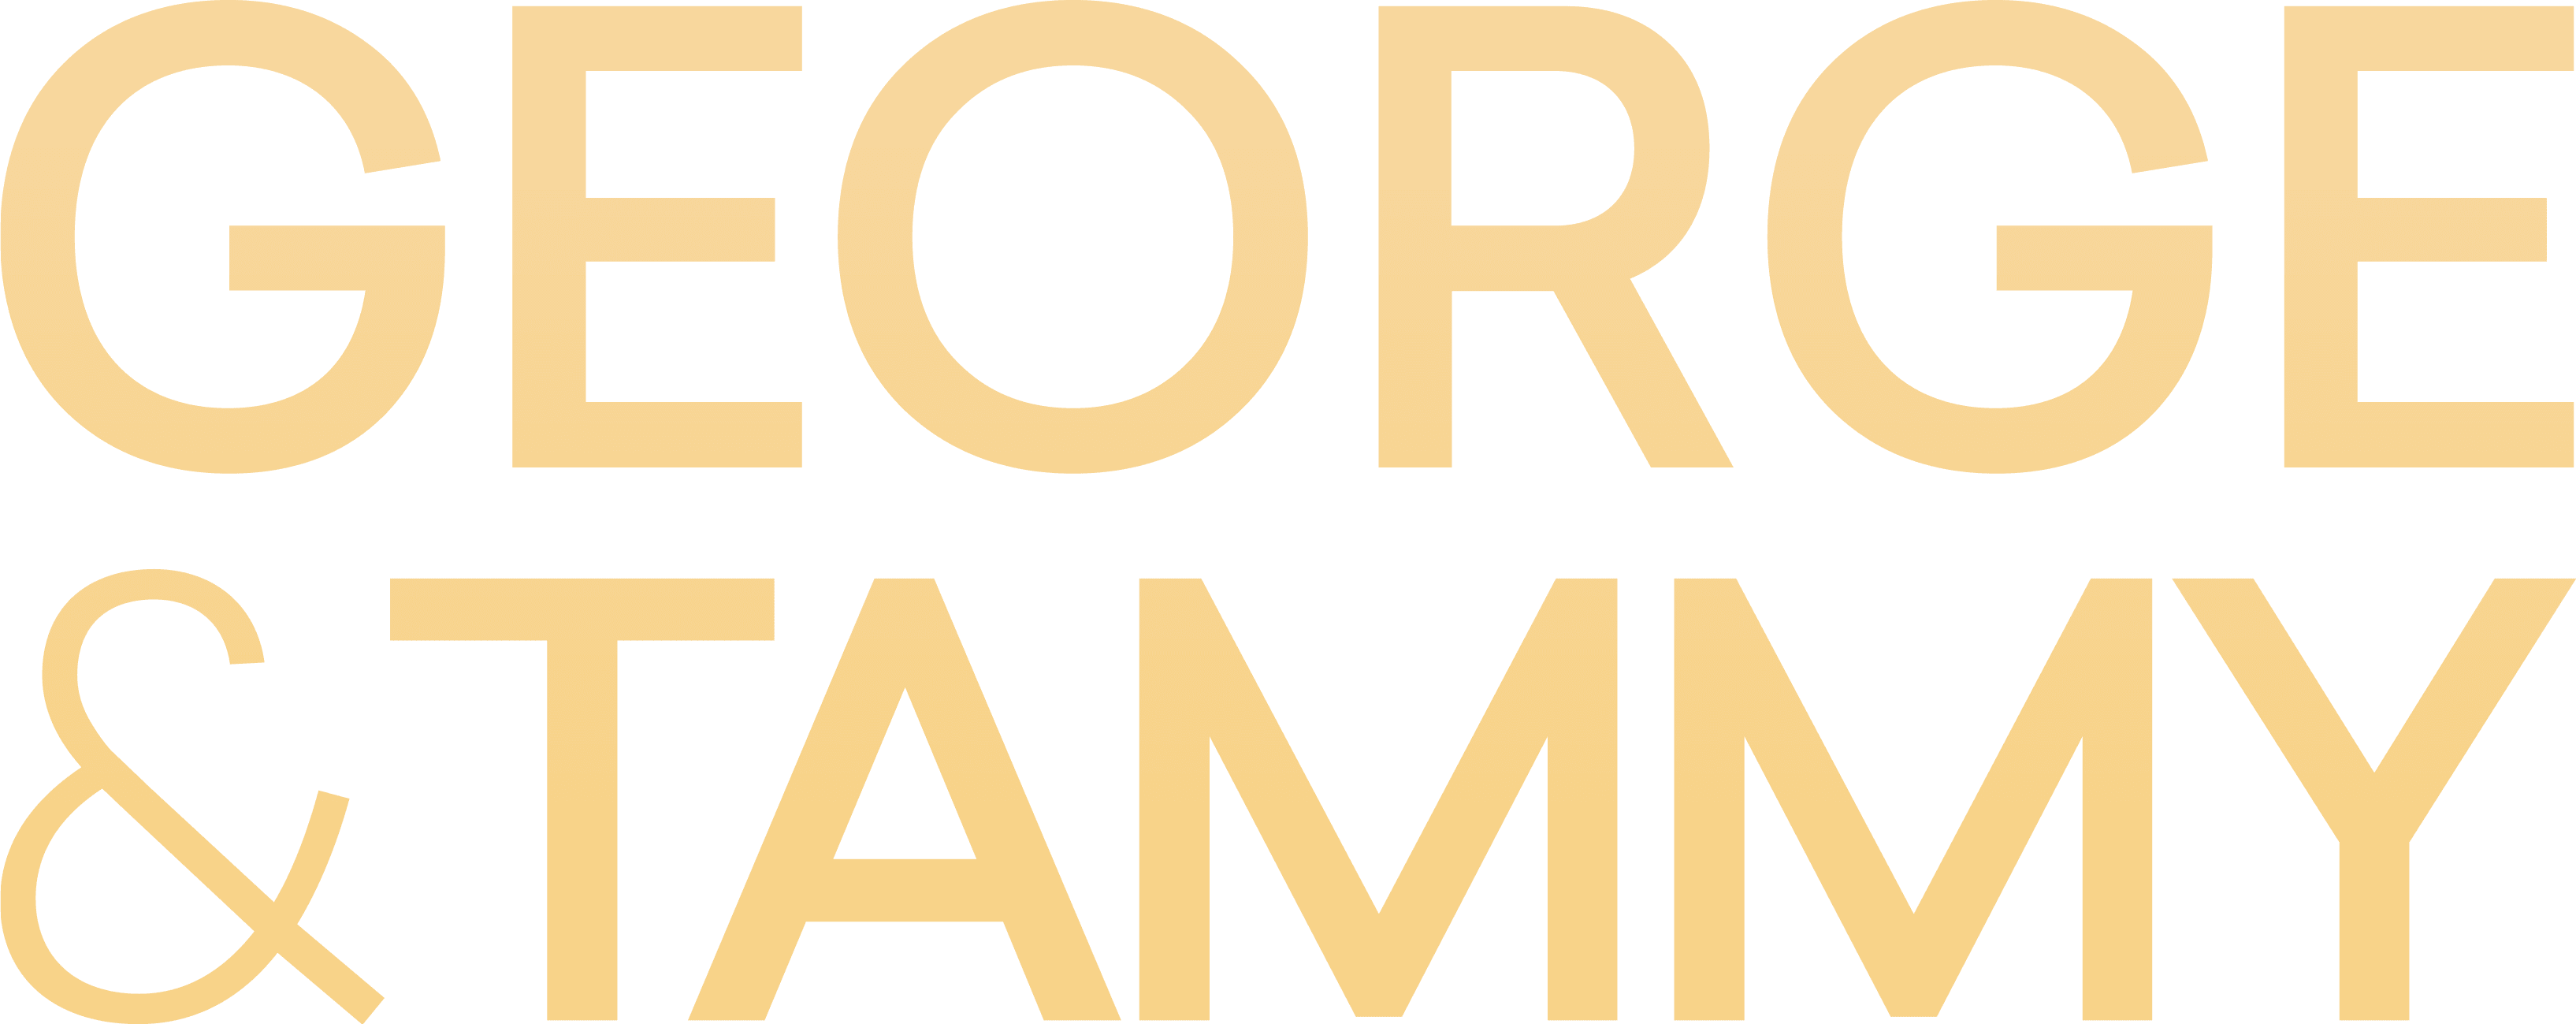 George & Tammy logo